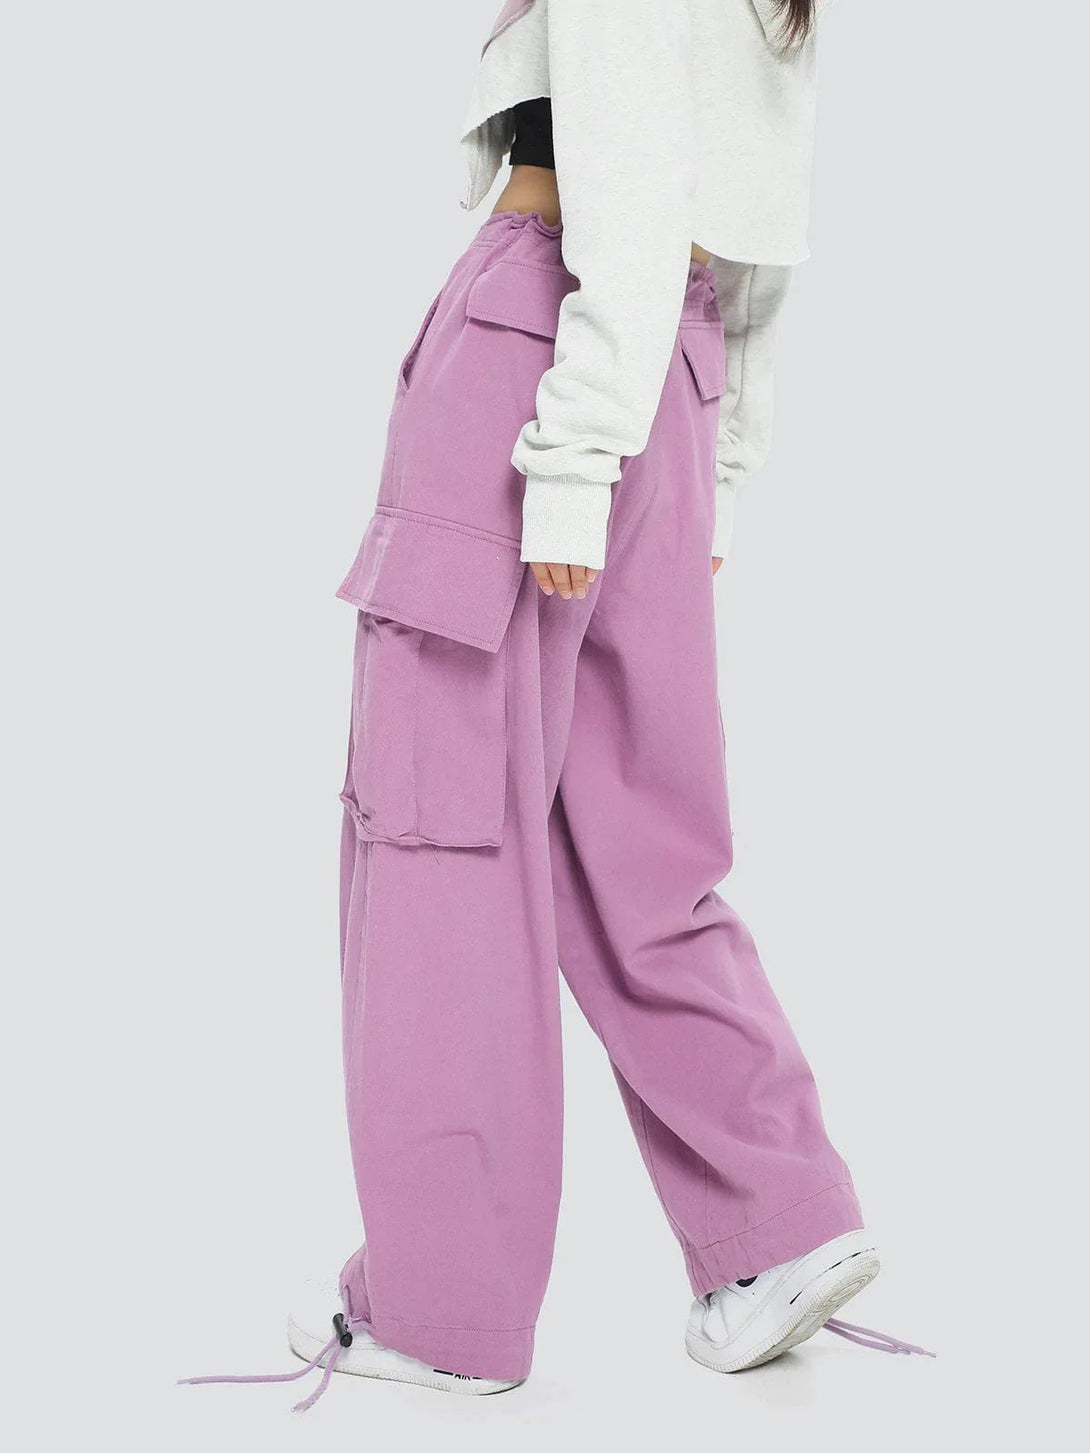 Majesda® - Side Pockets Pants outfit ideas streetwear fashion